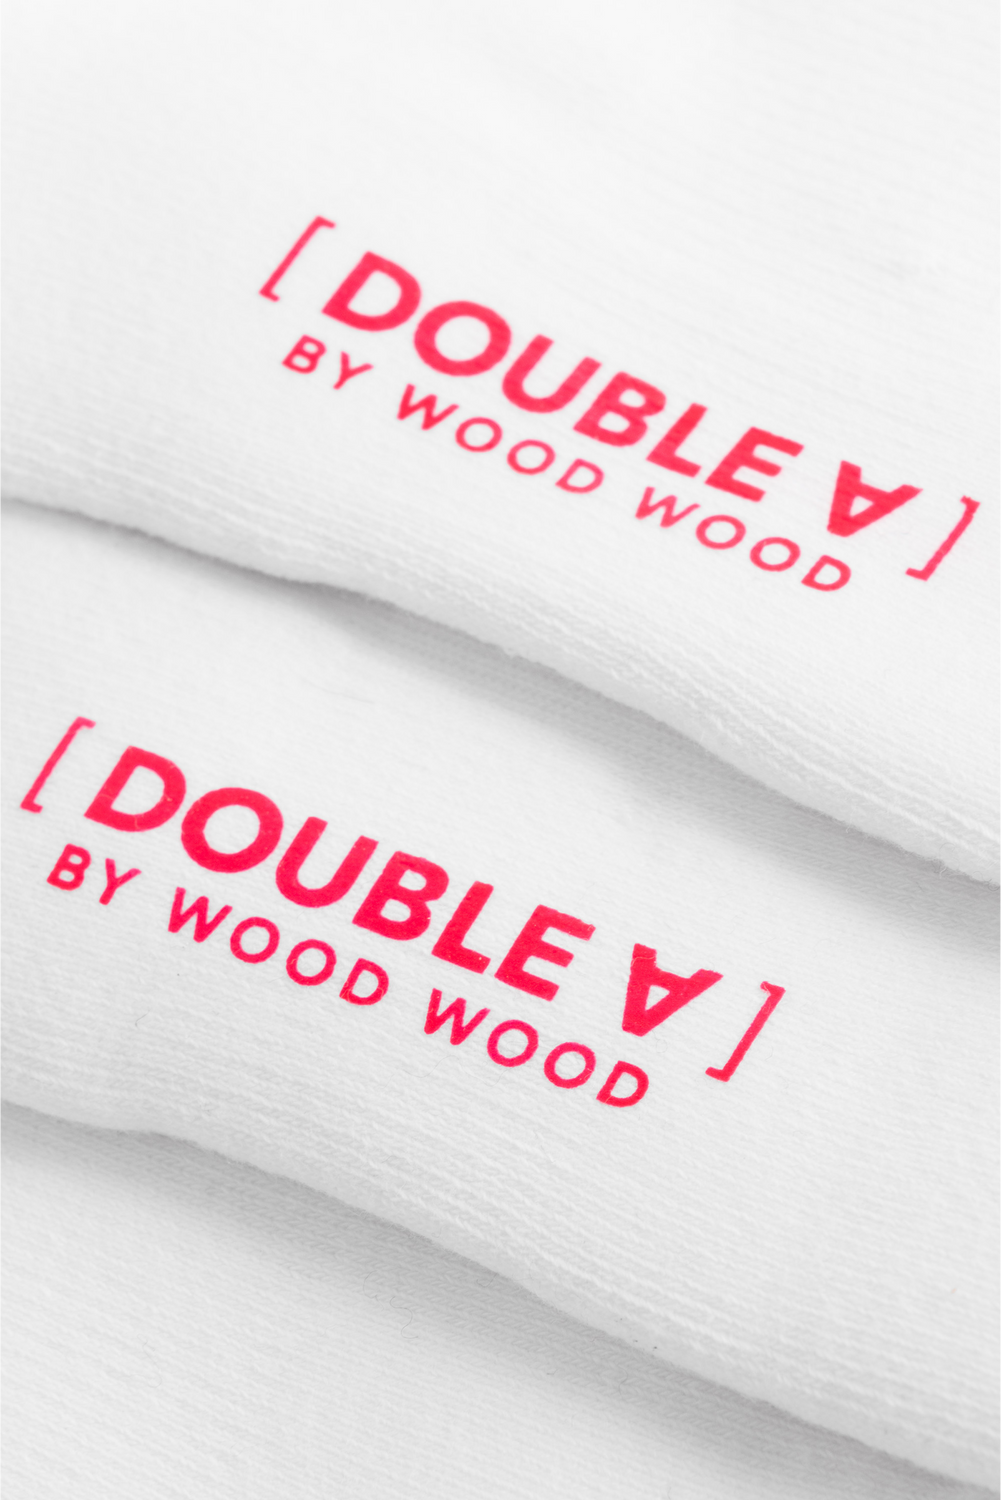 Socks Wood Wood